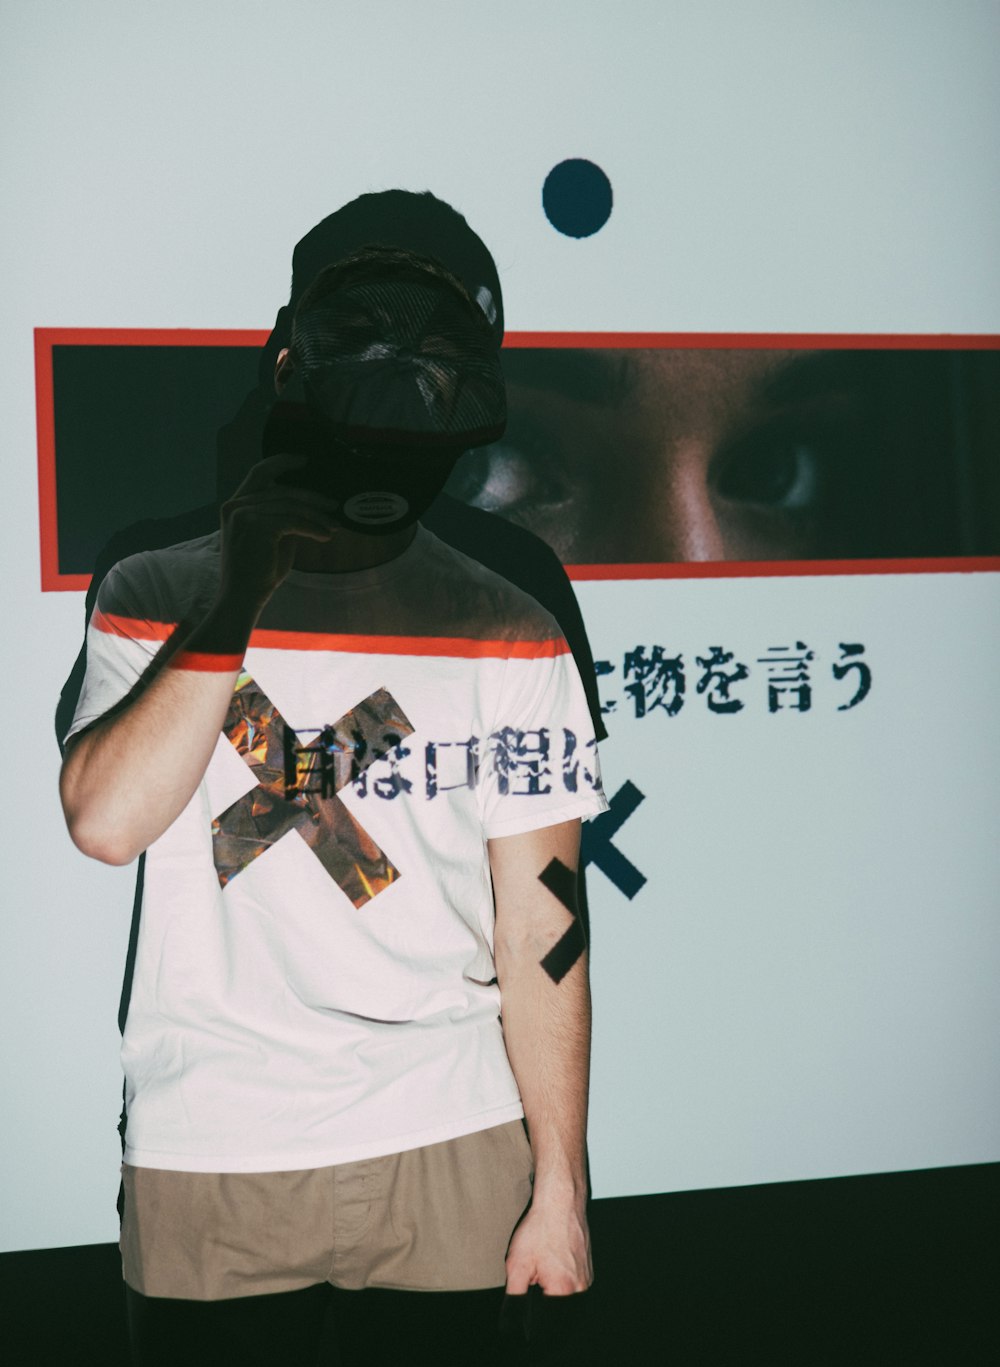 Mann im weißen Rundhals-T-Shirt mit schwarzer Maske